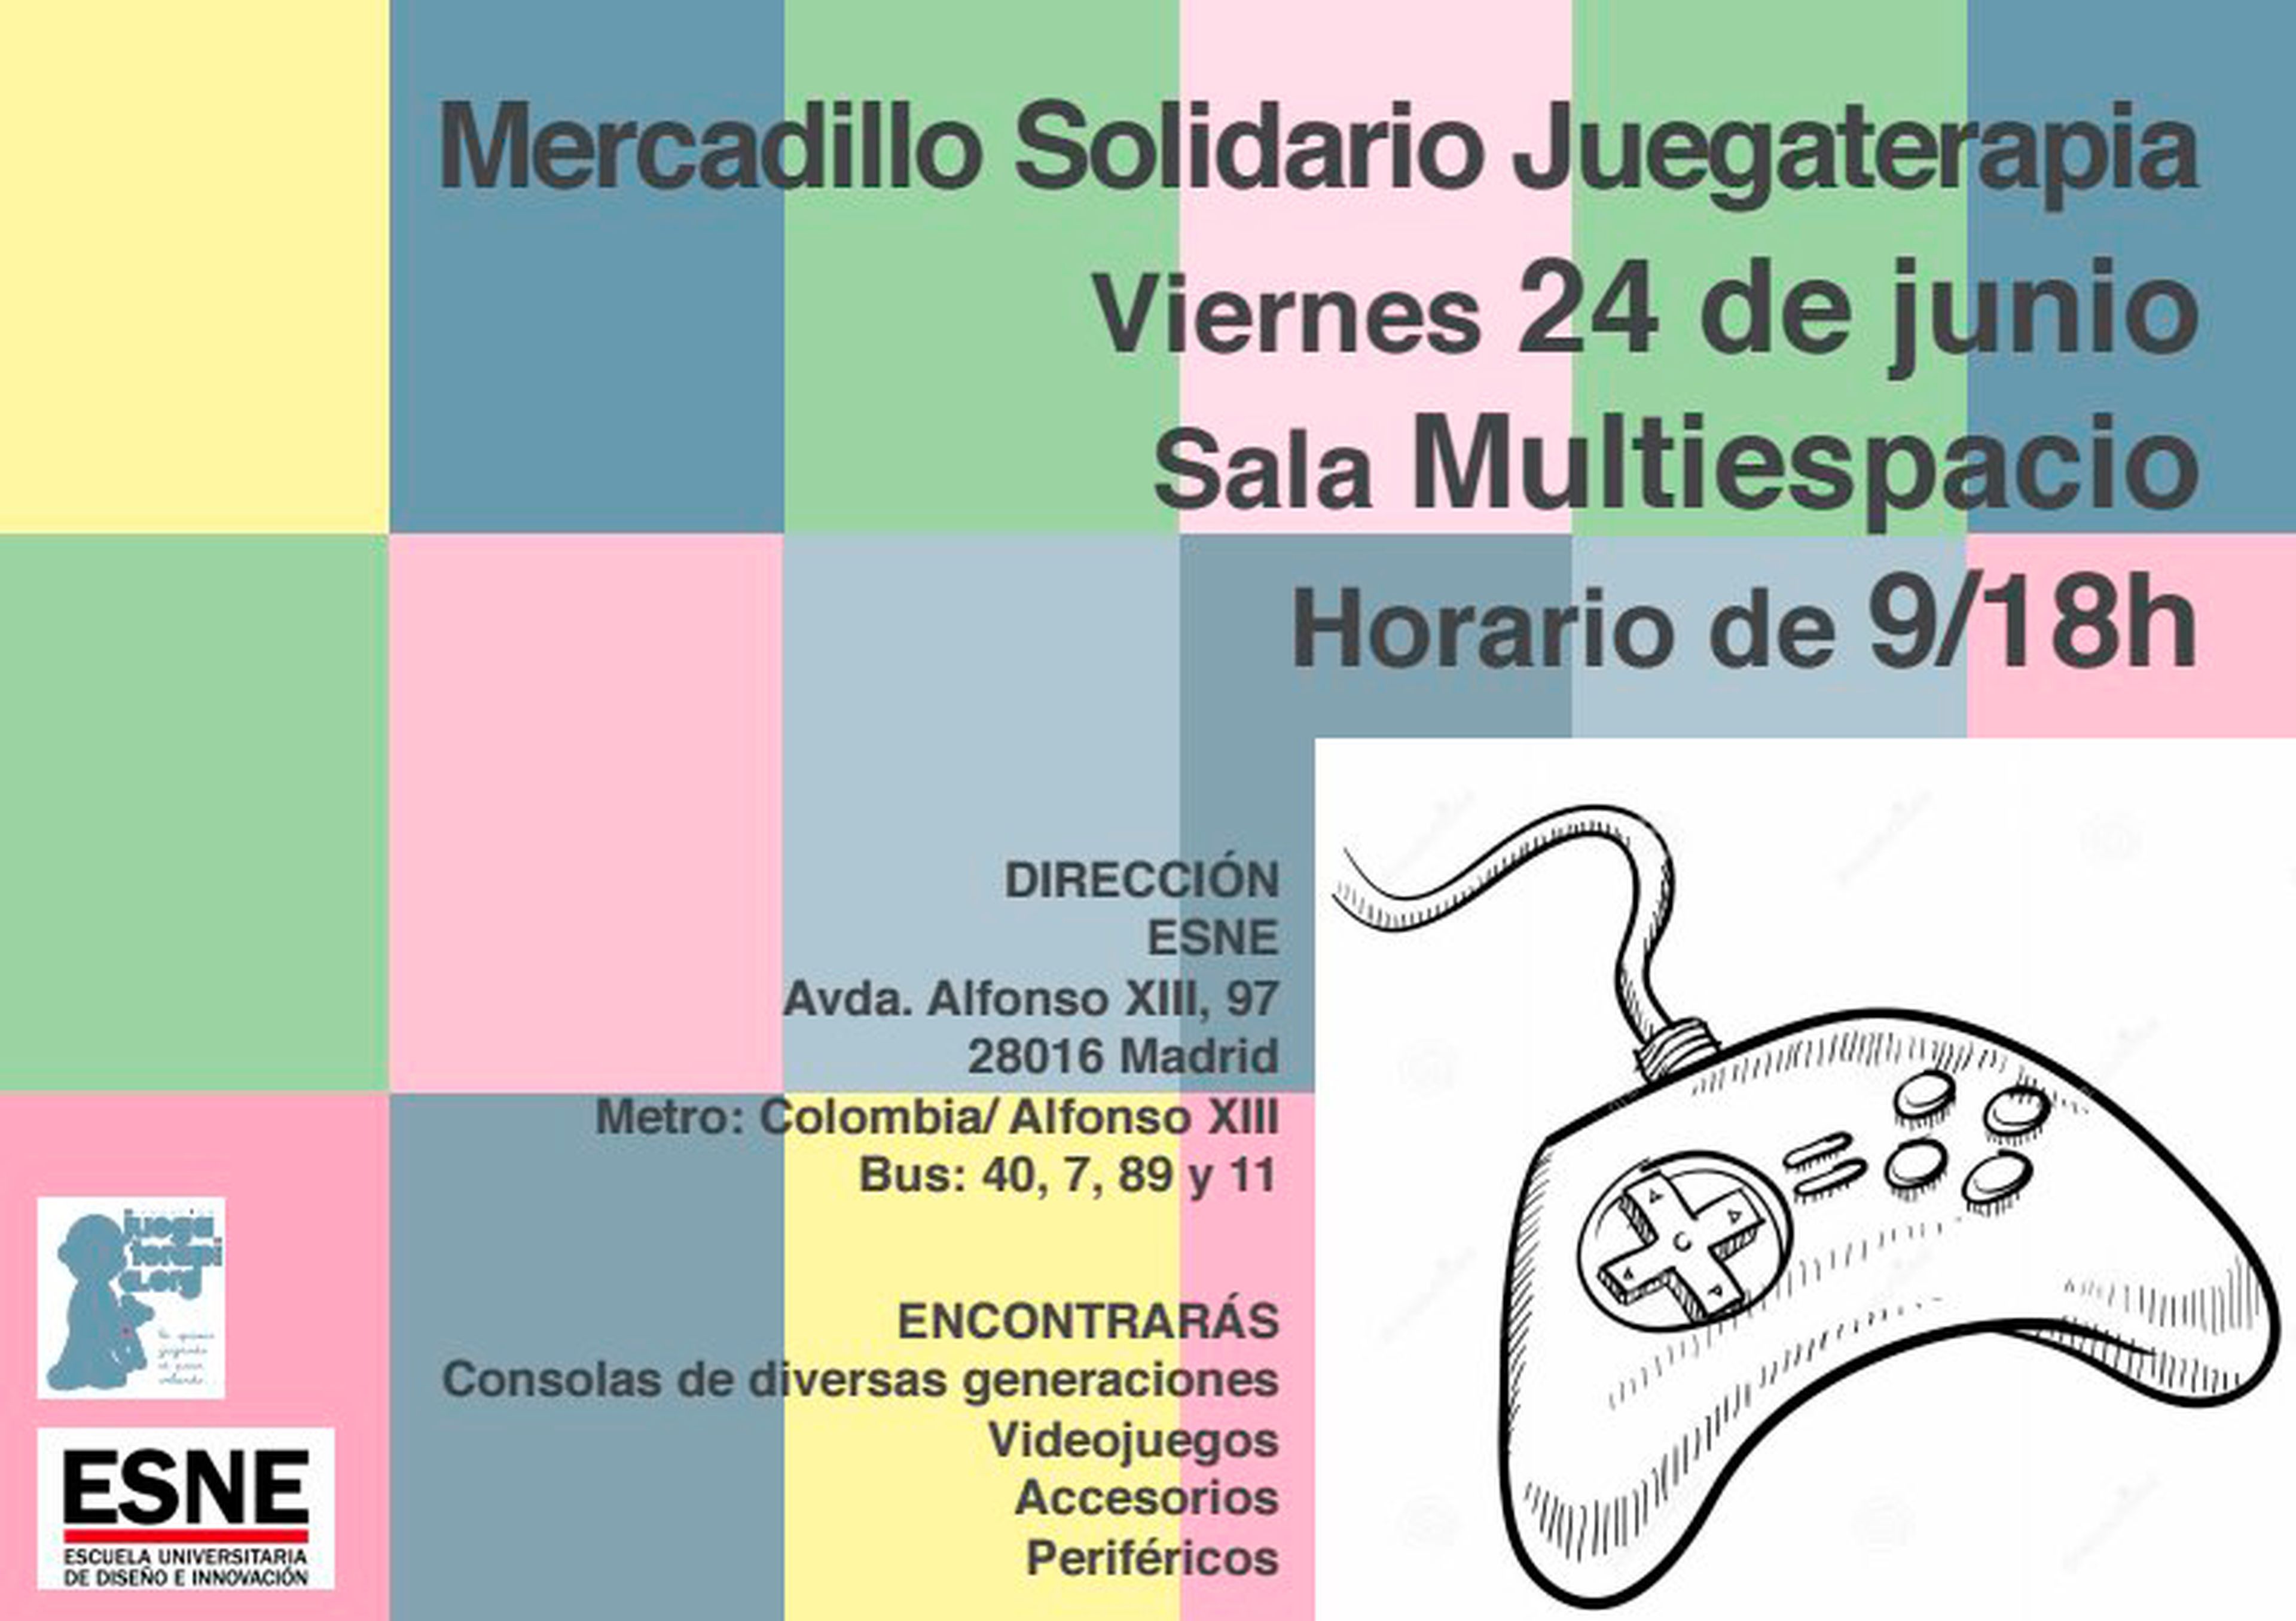 Mercadillo Solidario Juegaterapia 2016